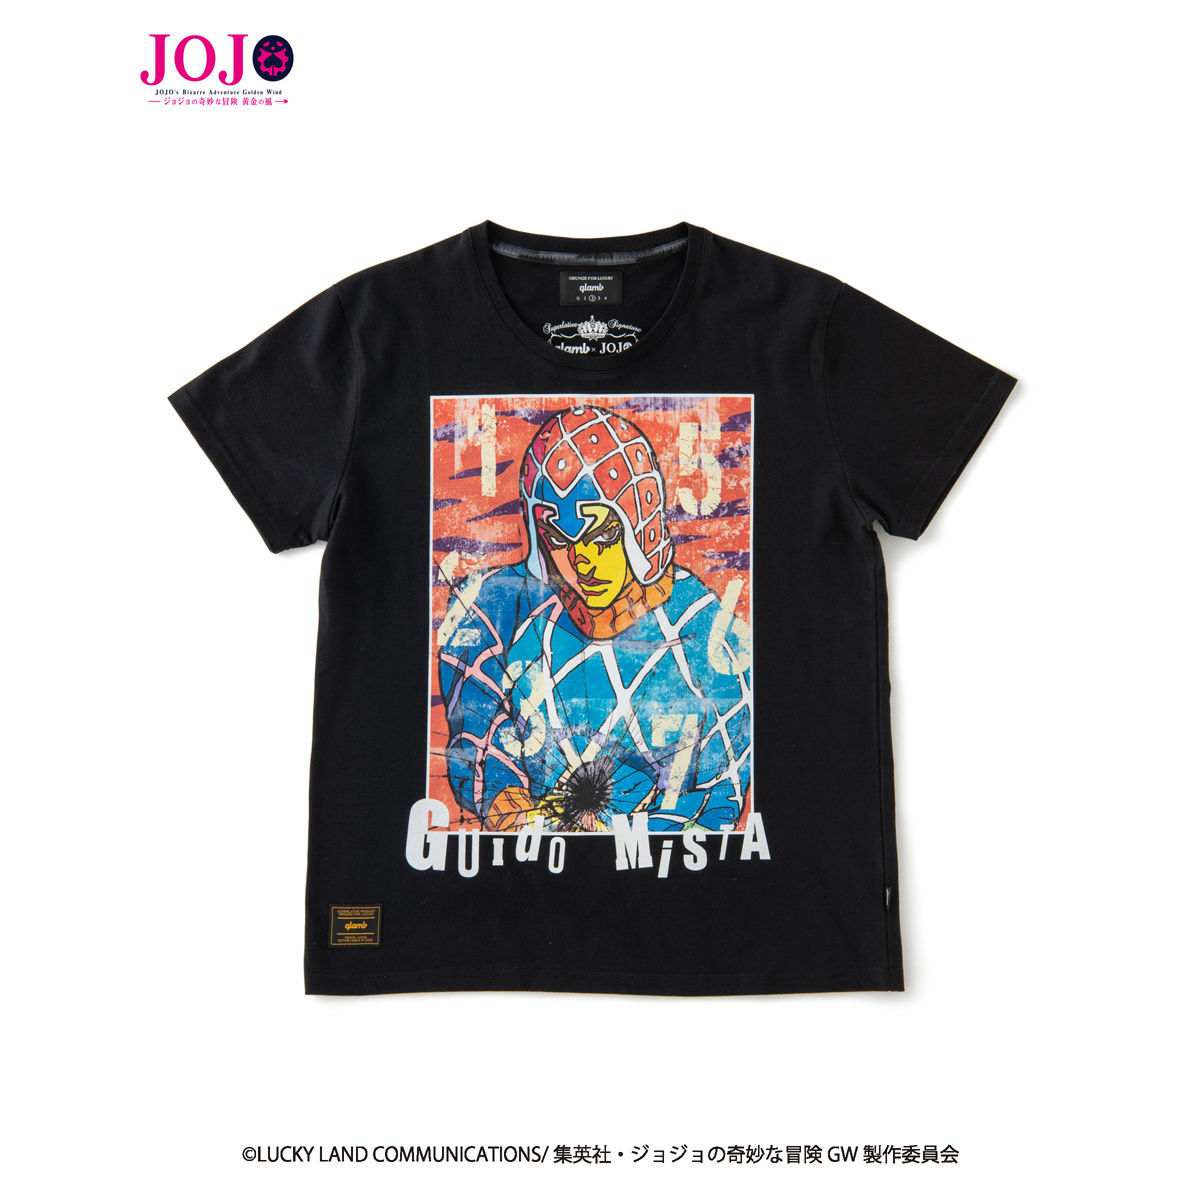 ジョジョの奇妙な冒険 黄金の風』×『glamb』コラボレーションTシャツ 